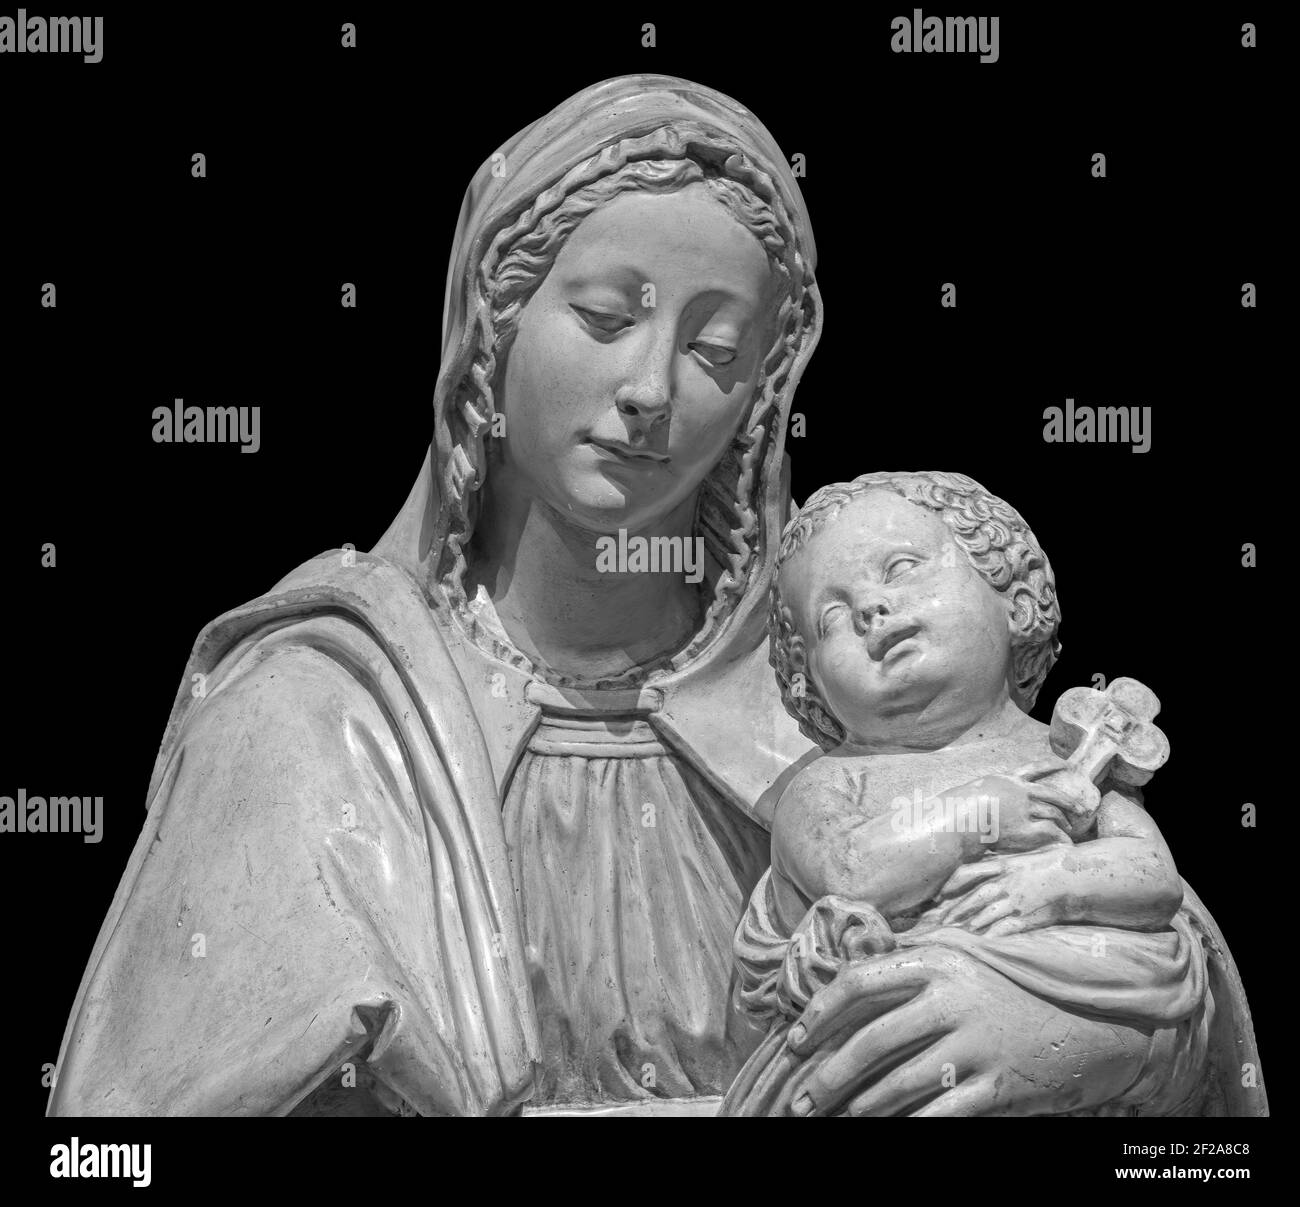 Statue de la Vierge Marie portant le bébé Jésus isolé sur fond noir. Sculpture de la mère de dieu, art chrétien classique Banque D'Images